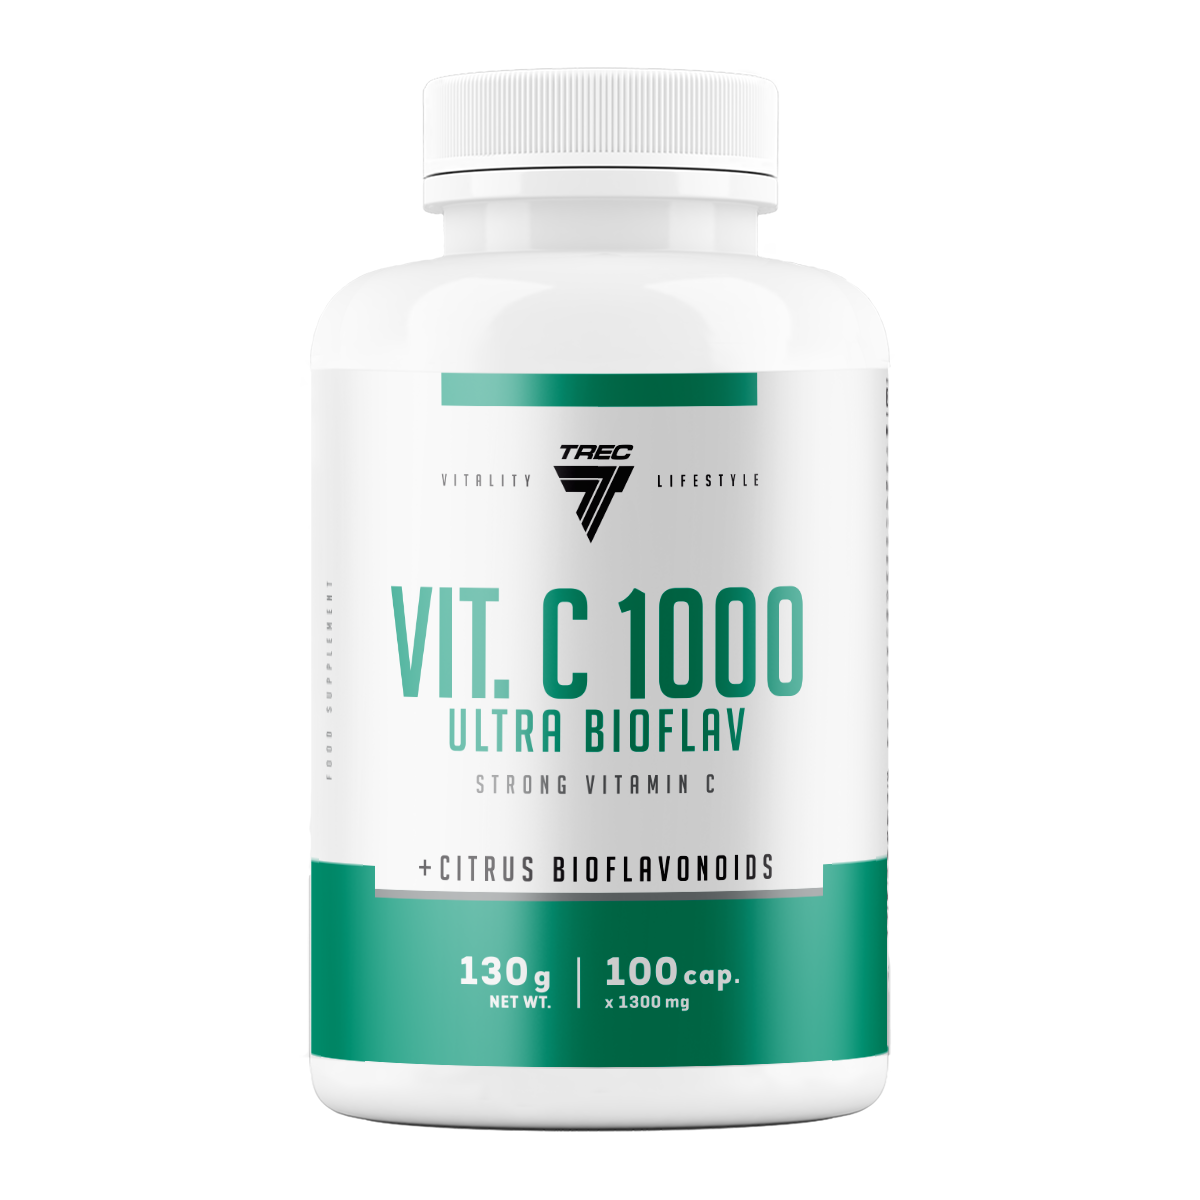 Trec Nutrition VIT. C 1000 ULTRA BIOFLAV